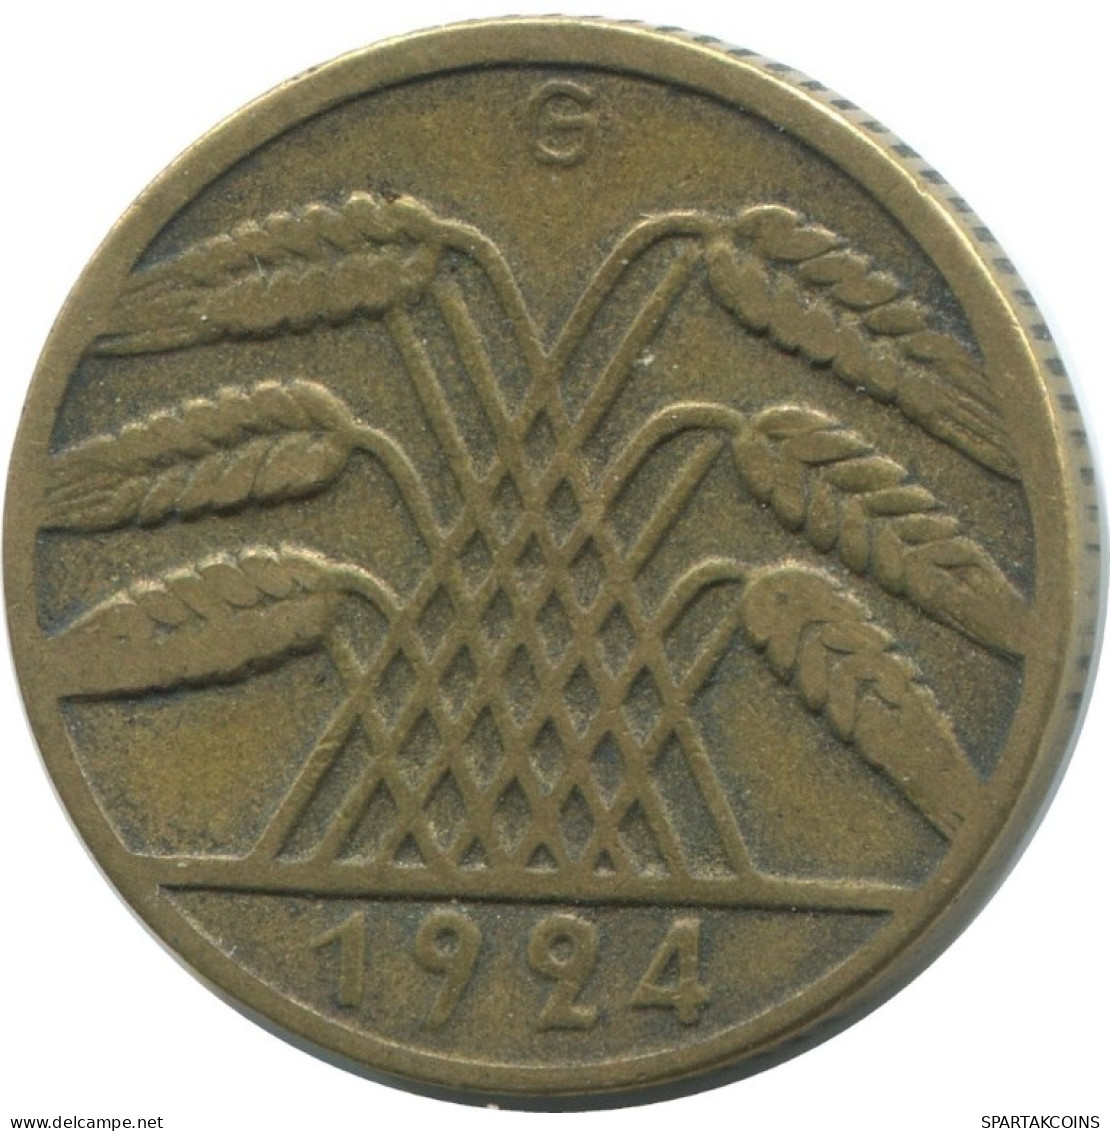 10 RENTENPFENNIG 1924 G GERMANY Coin #AE352.U.A - 10 Renten- & 10 Reichspfennig